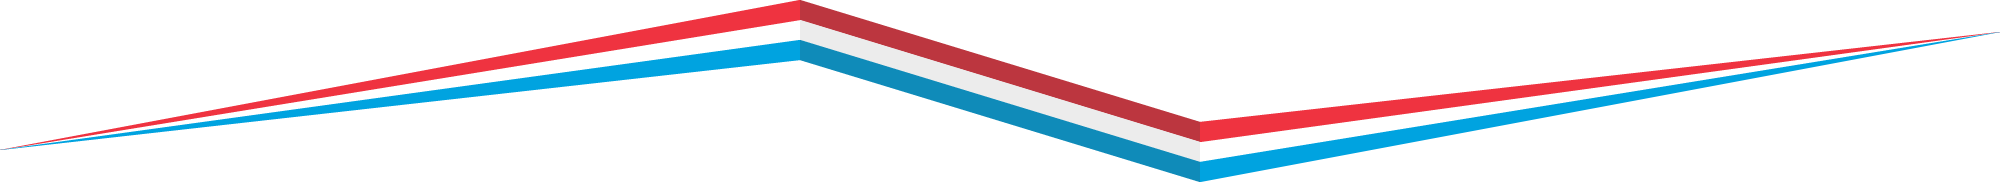 Bandeau Luxembourg aux couleurs rouge, blanc et bleu du drapeux luxembourgeois